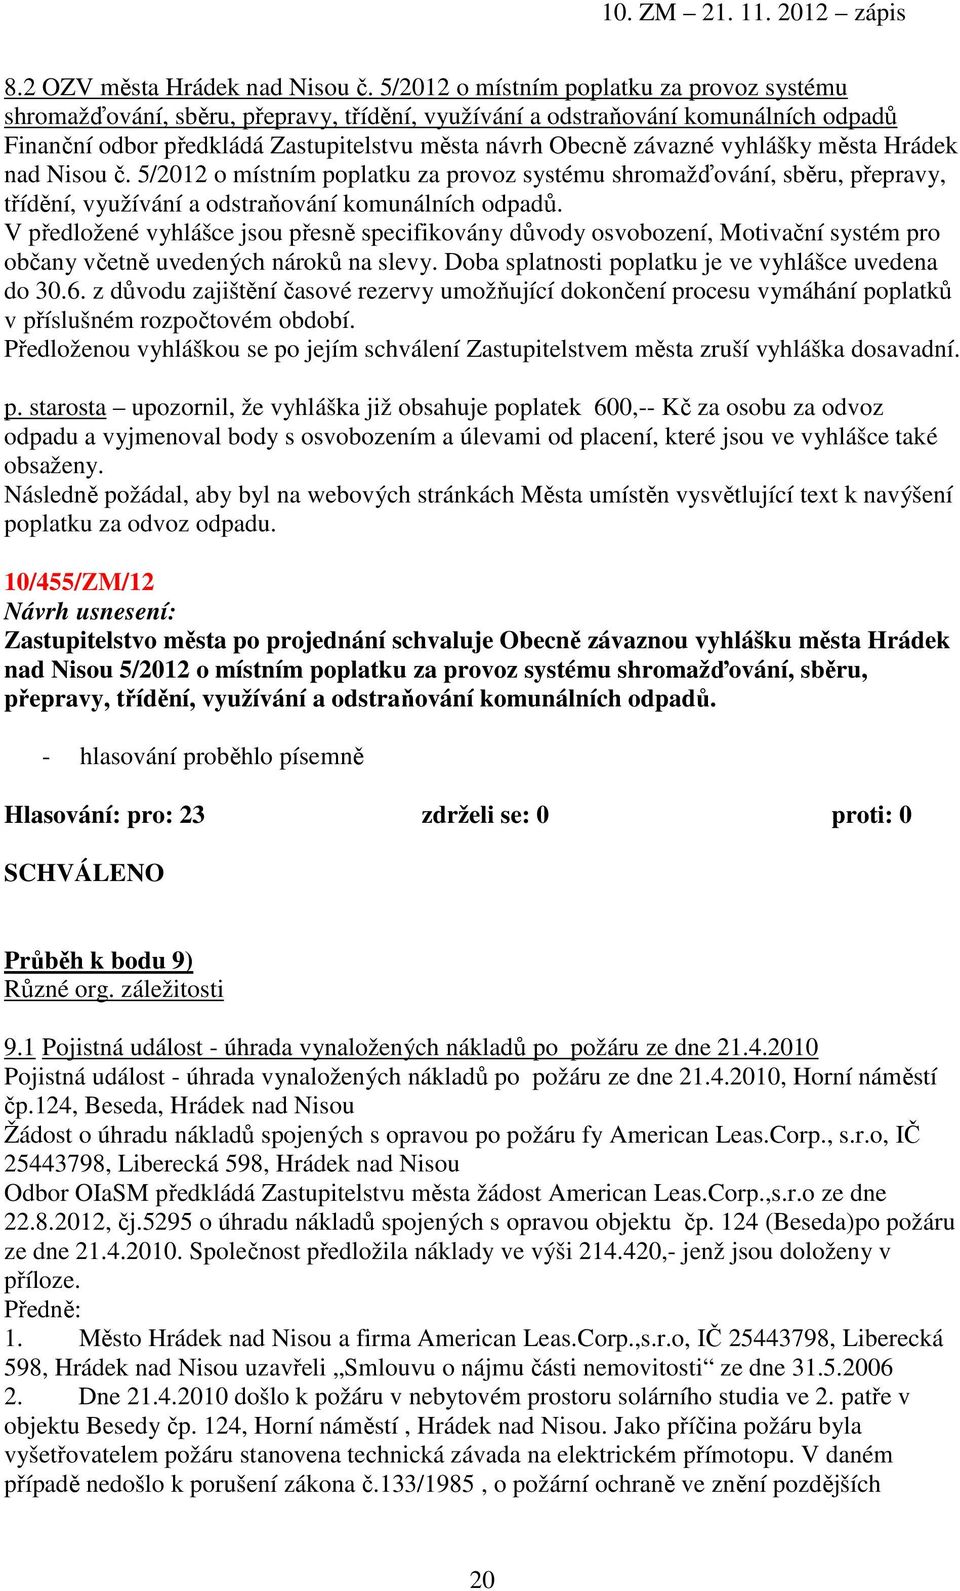 vyhlášky města Hrádek nad Nisou č. 5/2012 o místním poplatku za provoz systému shromažďování, sběru, přepravy, třídění, využívání a odstraňování komunálních odpadů.